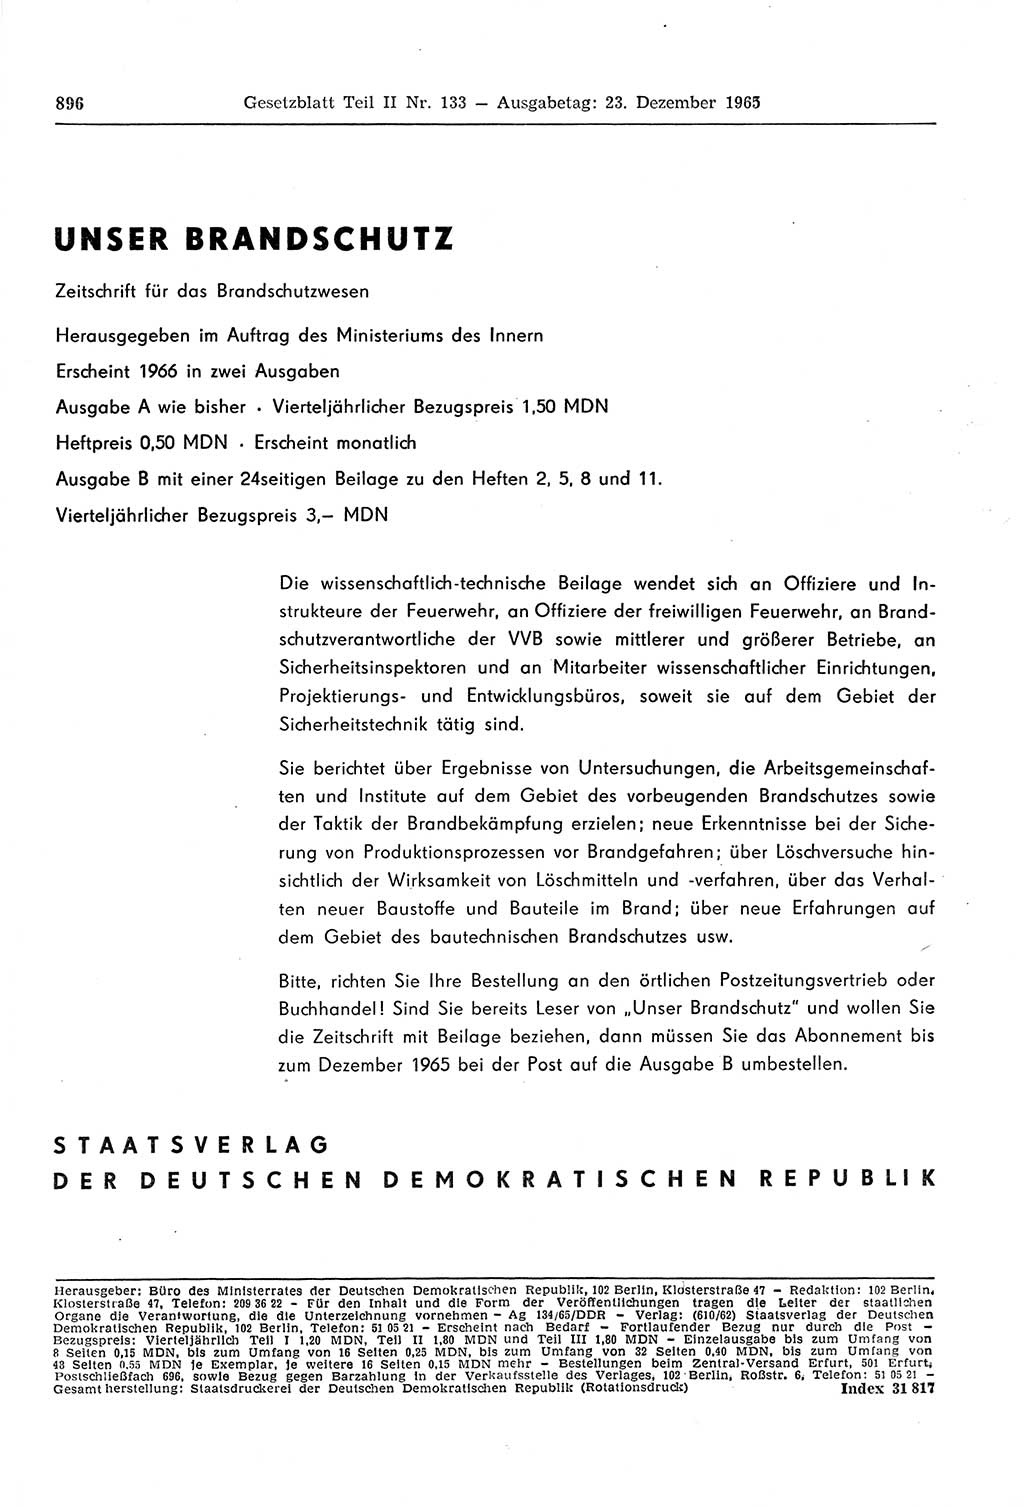 Gesetzblatt (GBl.) der Deutschen Demokratischen Republik (DDR) Teil ⅠⅠ 1965, Seite 896 (GBl. DDR ⅠⅠ 1965, S. 896)